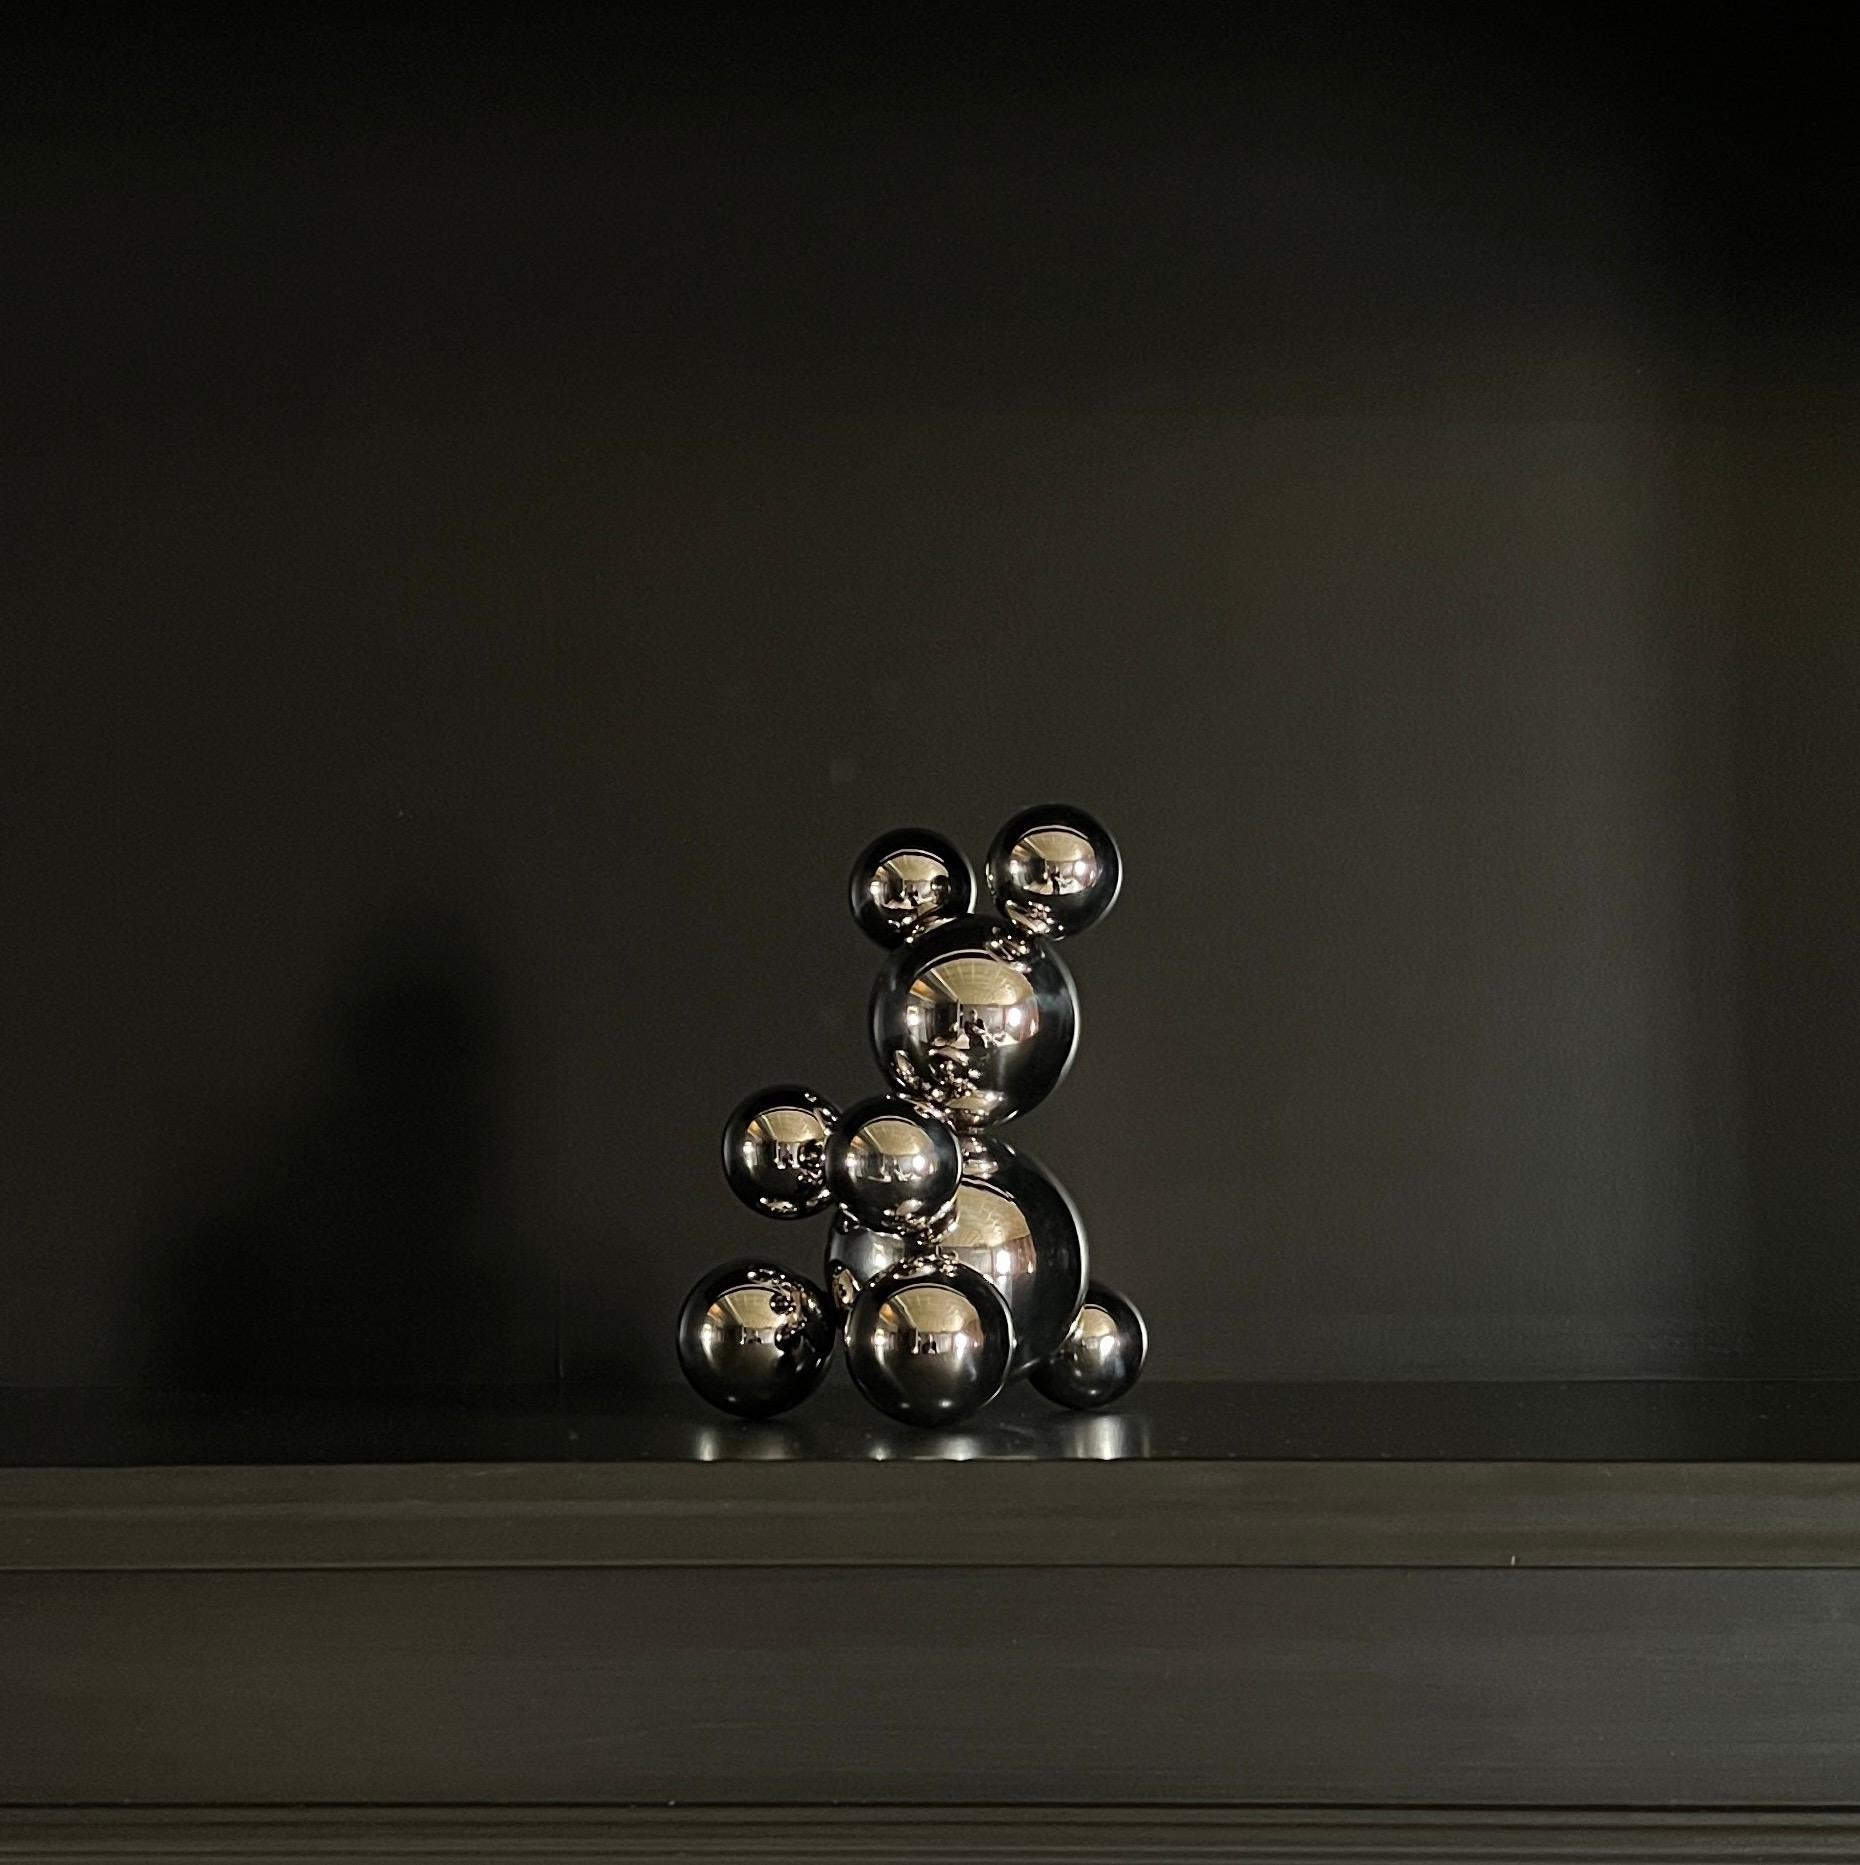 Tiny Stainless Steel Bear 'Amelia' Sculpture Minimalistic Animal 6